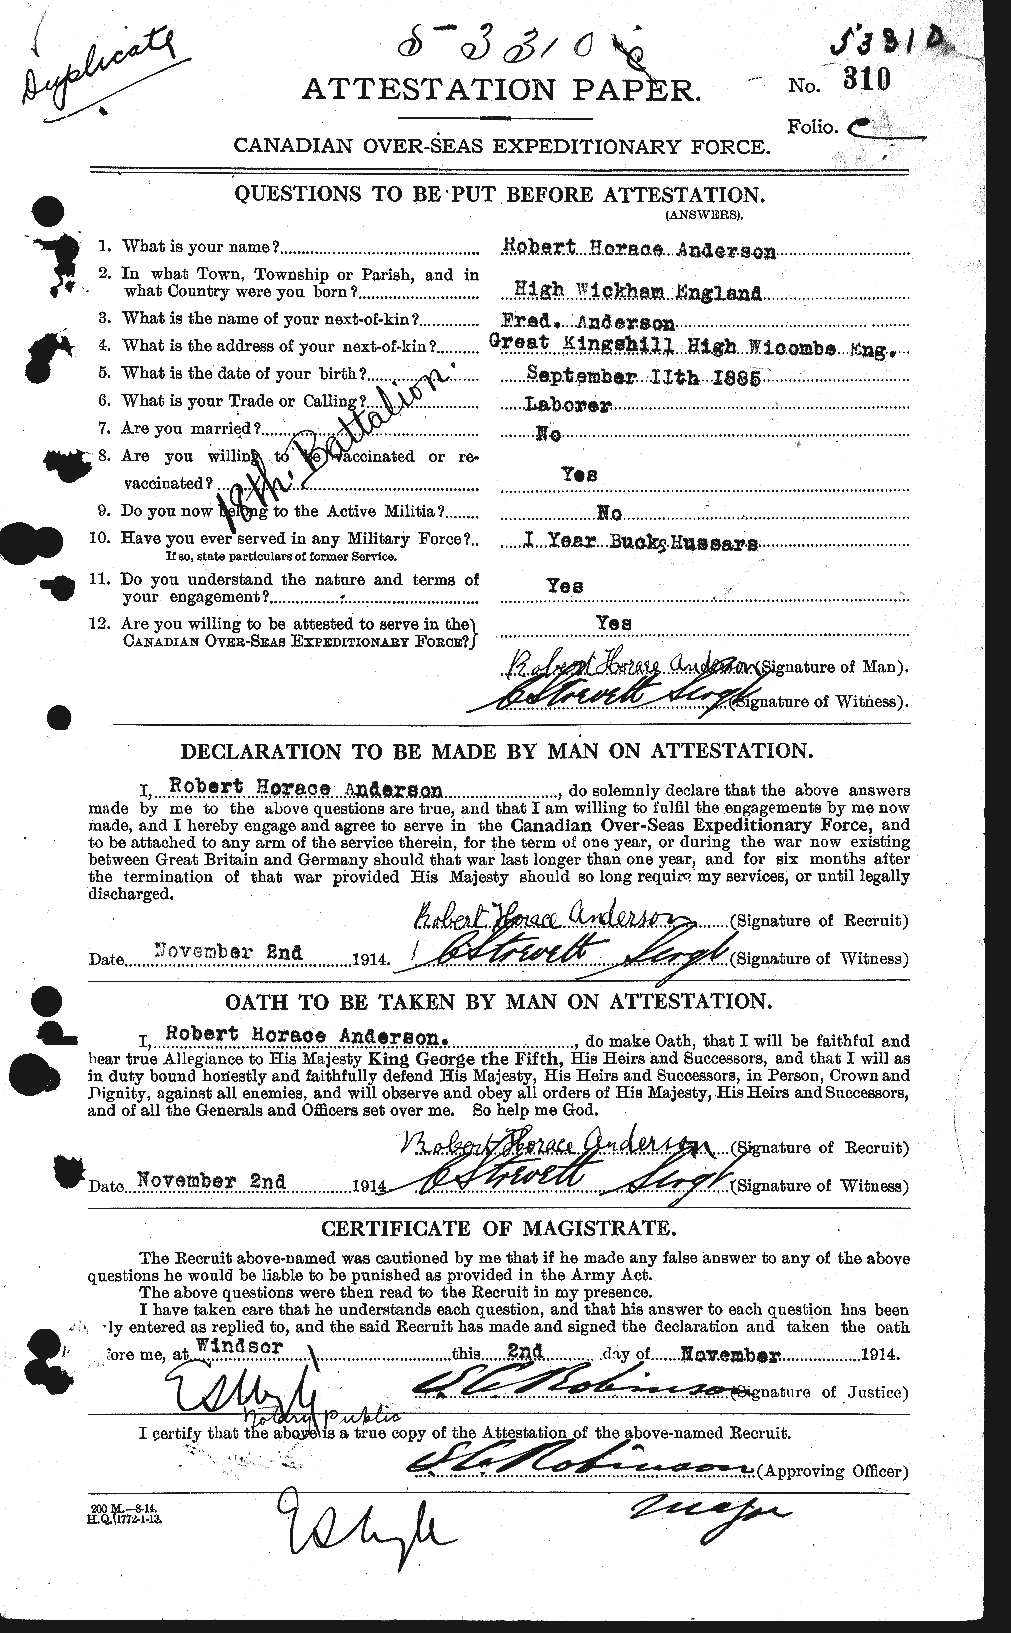 Dossiers du Personnel de la Première Guerre mondiale - CEC 207247a